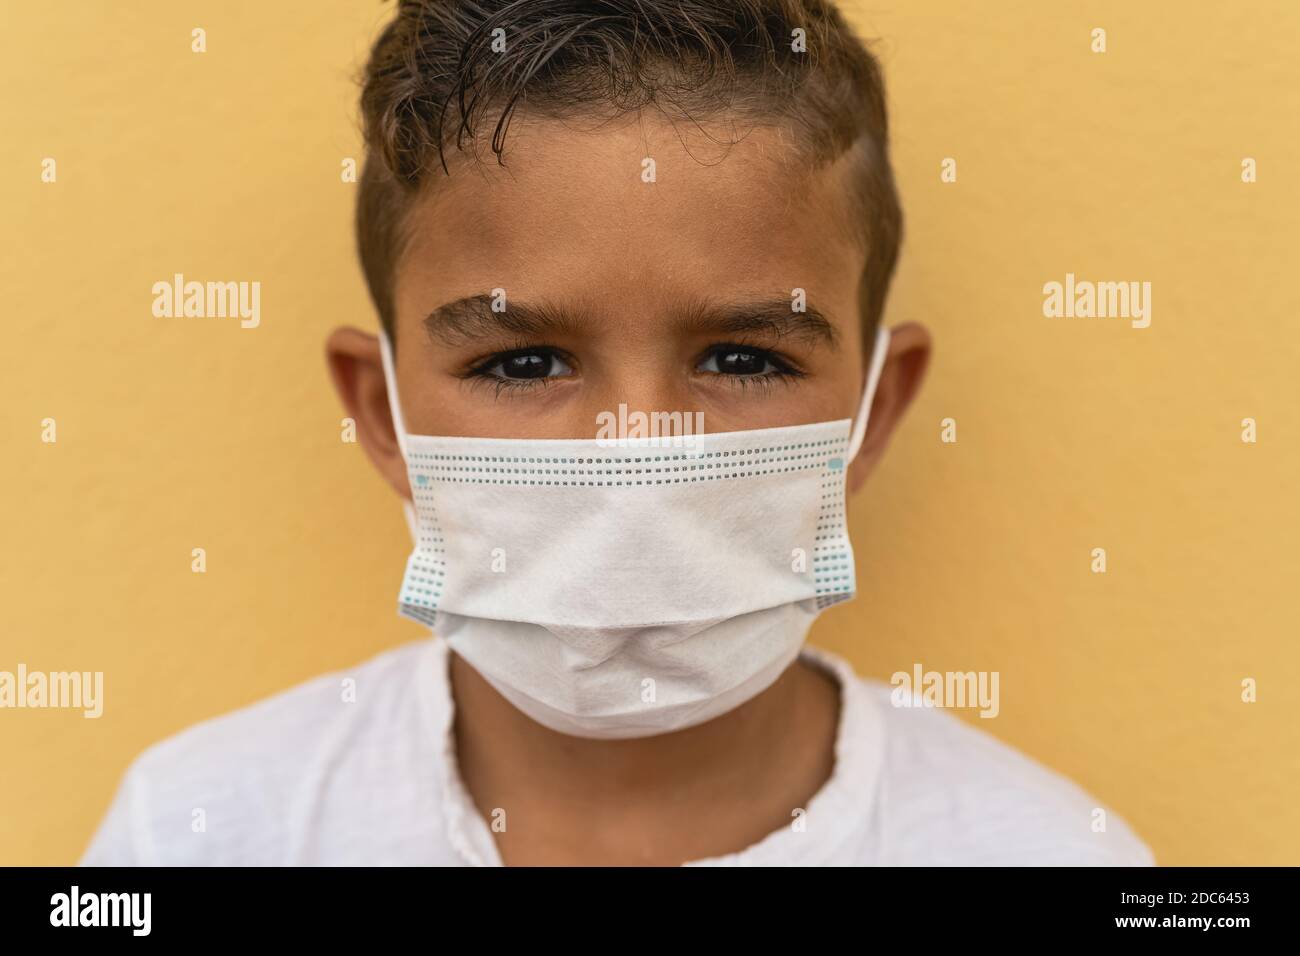 Kind trägt Gesichtsschutzmaske zurück zur Schule gehen während corona Virus pandemic - Sicherheitskovid19 Maßnahmenkonzept Stockfoto